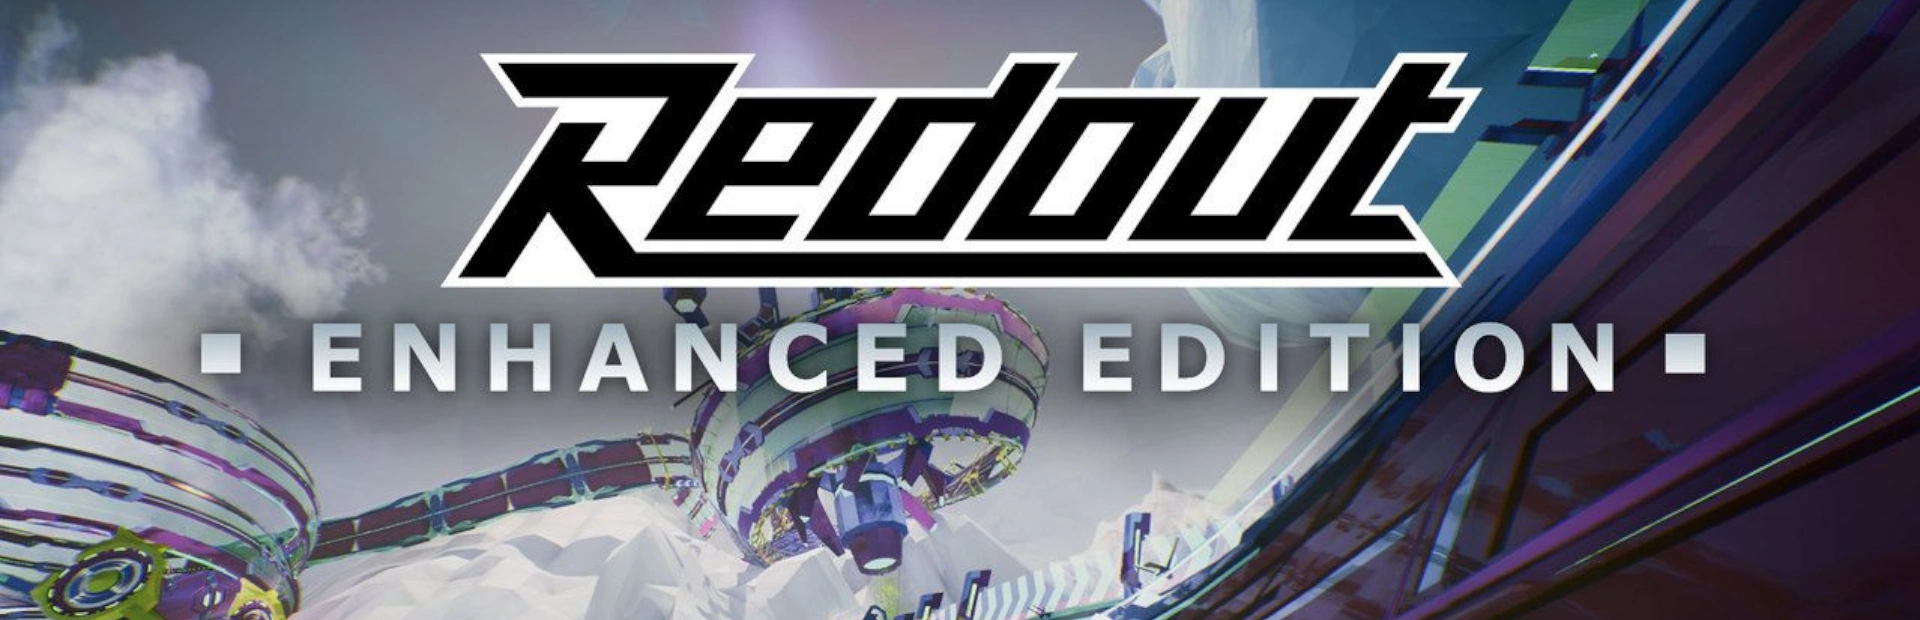 دانلود بازی Redout: Enhanced Edition برای کامپیوتر | گیمباتو